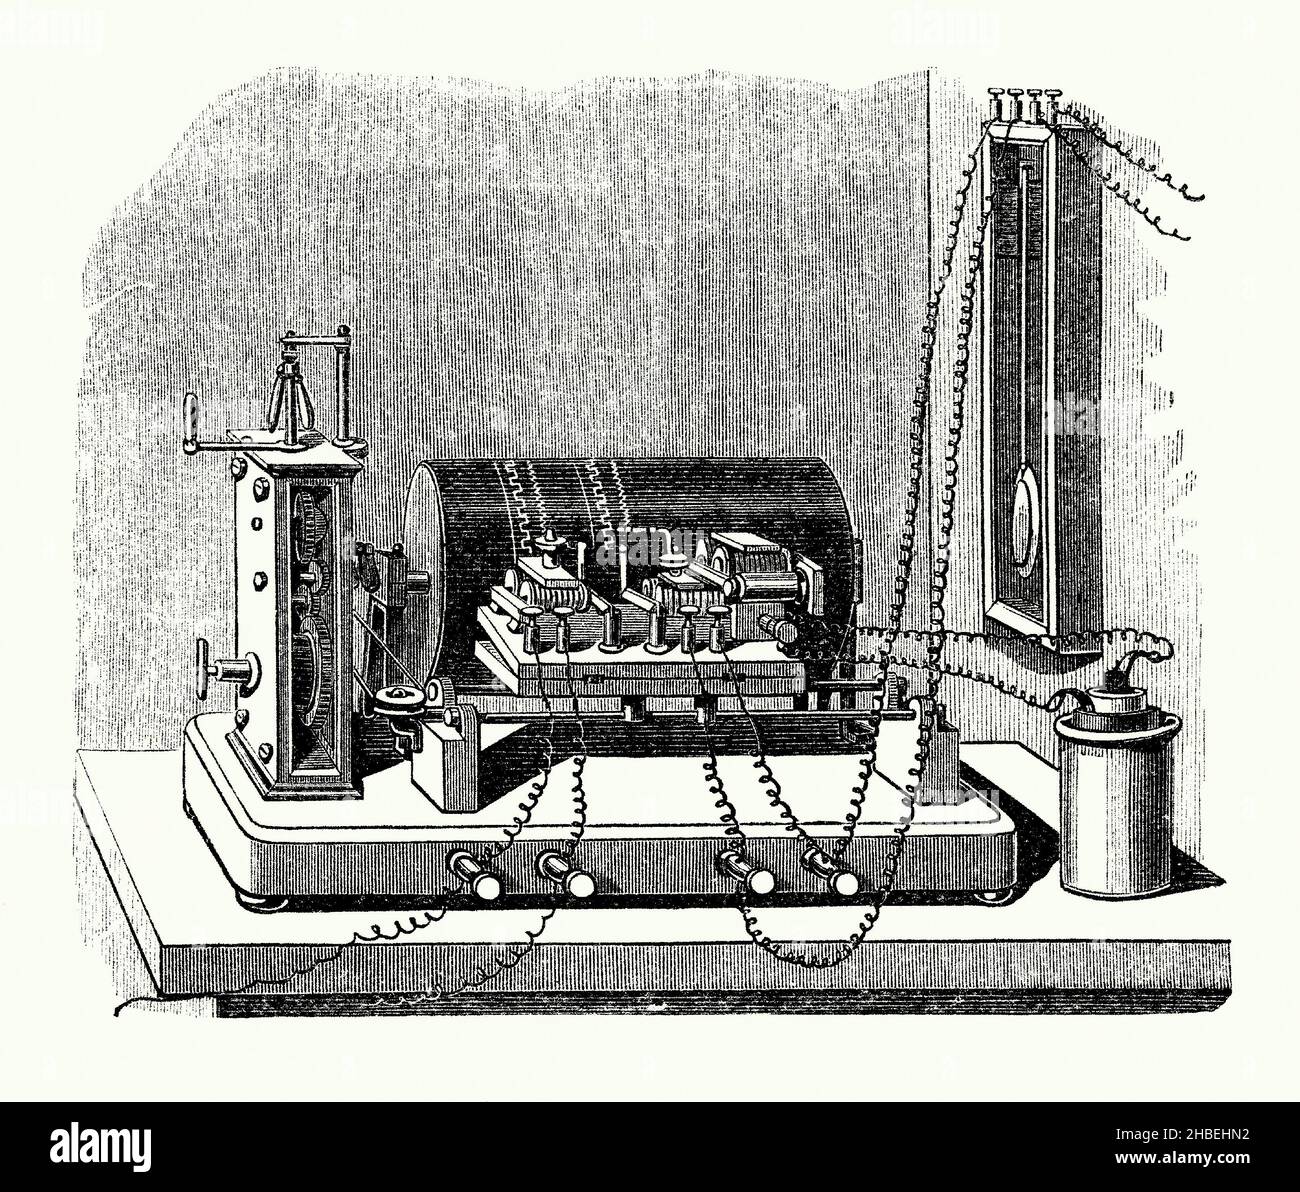 Una vecchia incisione di un dispositivo di cronografo di registrazione elettrica della metà del 1800s. E 'da un libro vittoriano del 1890s sulle scoperte e invenzioni durante il 1800s. Un cronografo è un tipo di orologio. Louis Moinet inventò il cronografo nel 1816 per l'uso nel tracciamento di oggetti astronomici. Fu sviluppato da Francis Bashforth e John Locke. L’apparecchio di registrazione qui illustrato è simile all’elettro-cronografo di John Locke – un cilindro rotante e una penna coperti di carta potrebbero registrare un evento entro i centesimi di secondo. Foto Stock